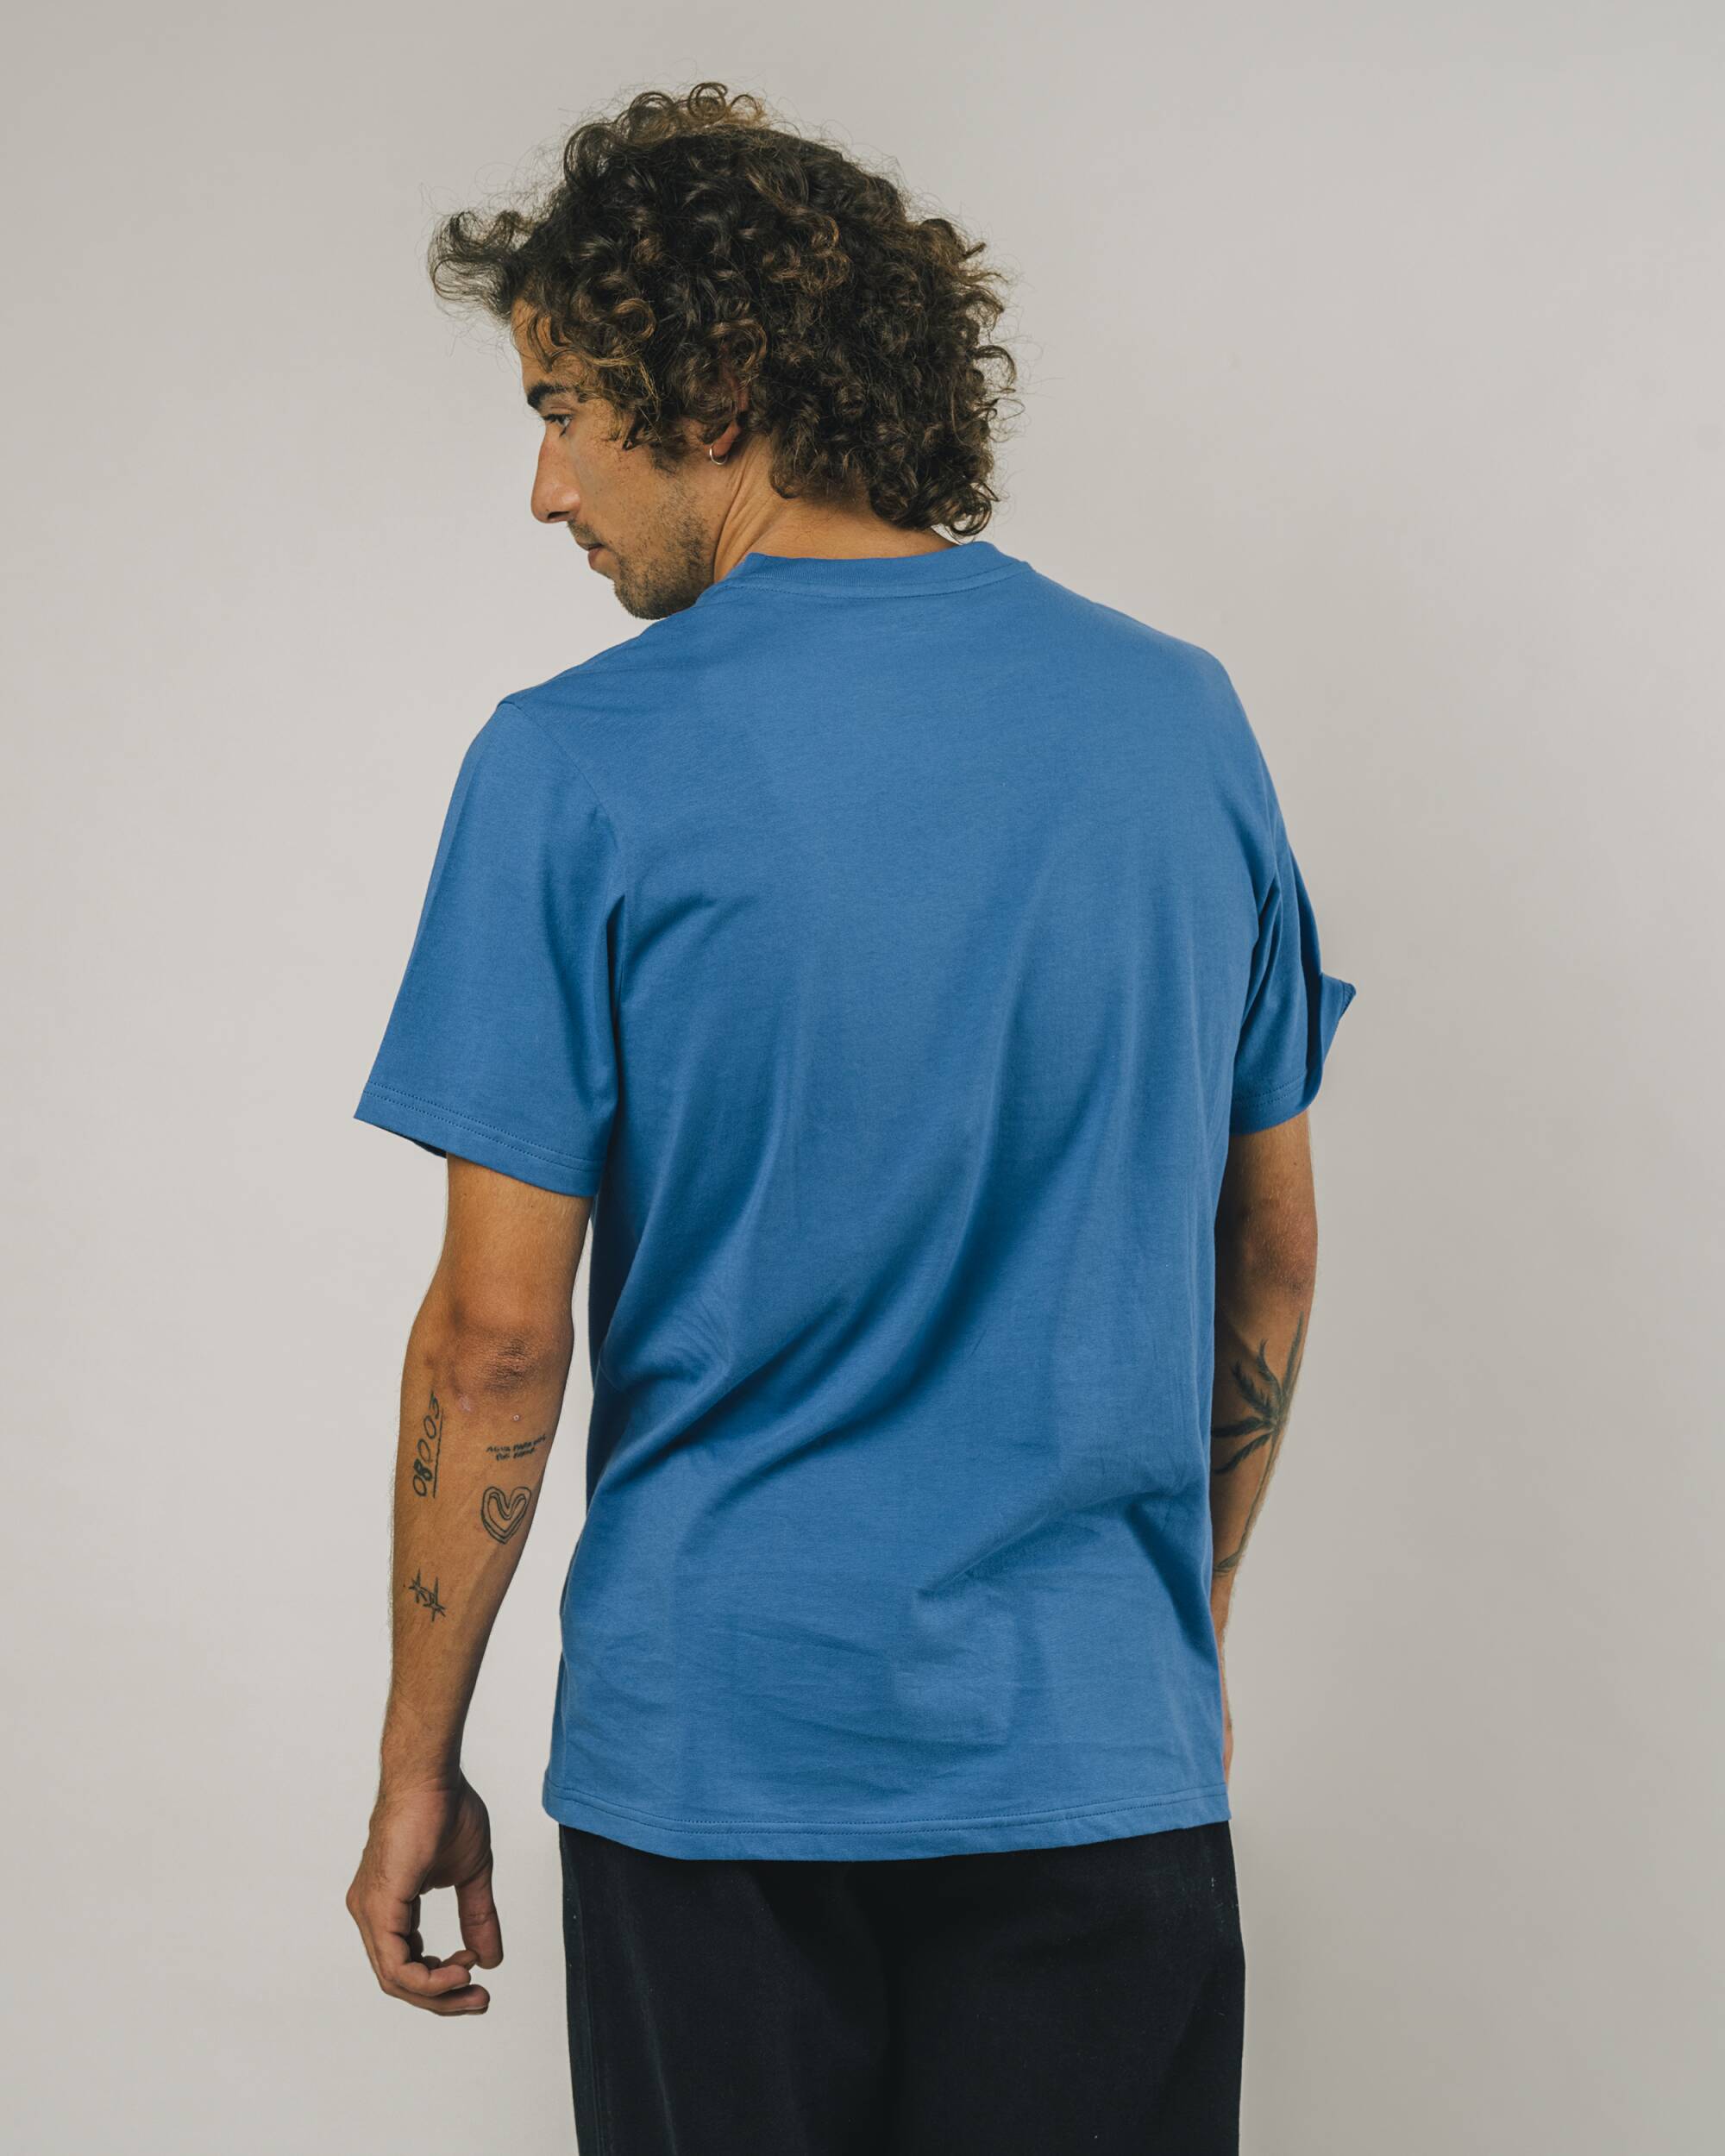 Blaues T-Shirt PLAYMOBIL Figure aus Bio-Baumwolle von Brava Fabrics